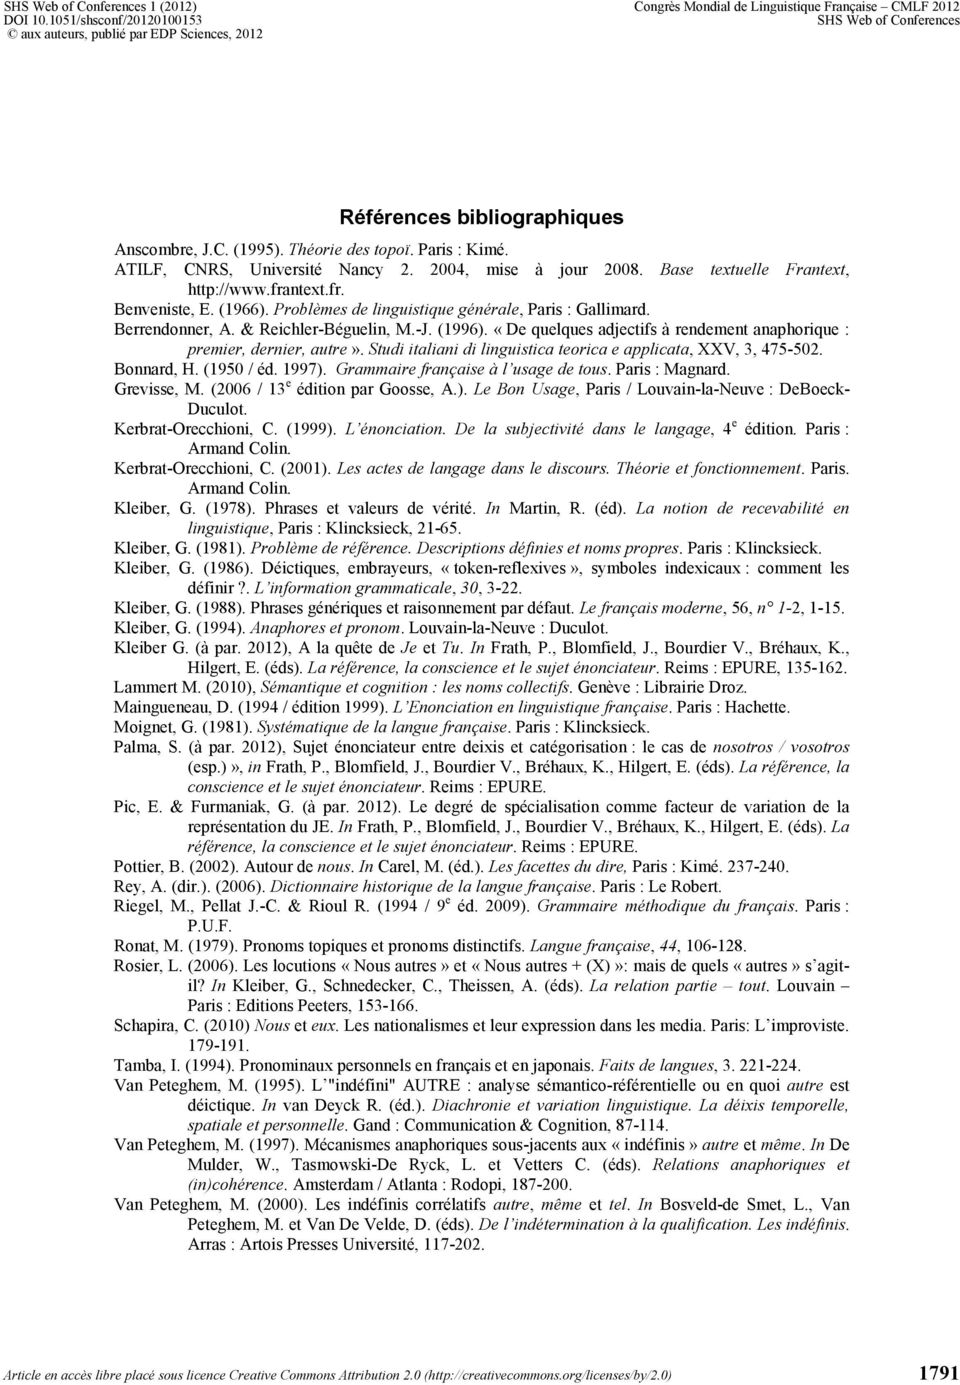 (1996). «De quelques adjectifs à rendement anaphorique : premier, dernier, autre». Studi italiani di linguistica teorica e applicata, XXV, 3, 475-502. Bonnard, H. (1950 / éd. 1997).